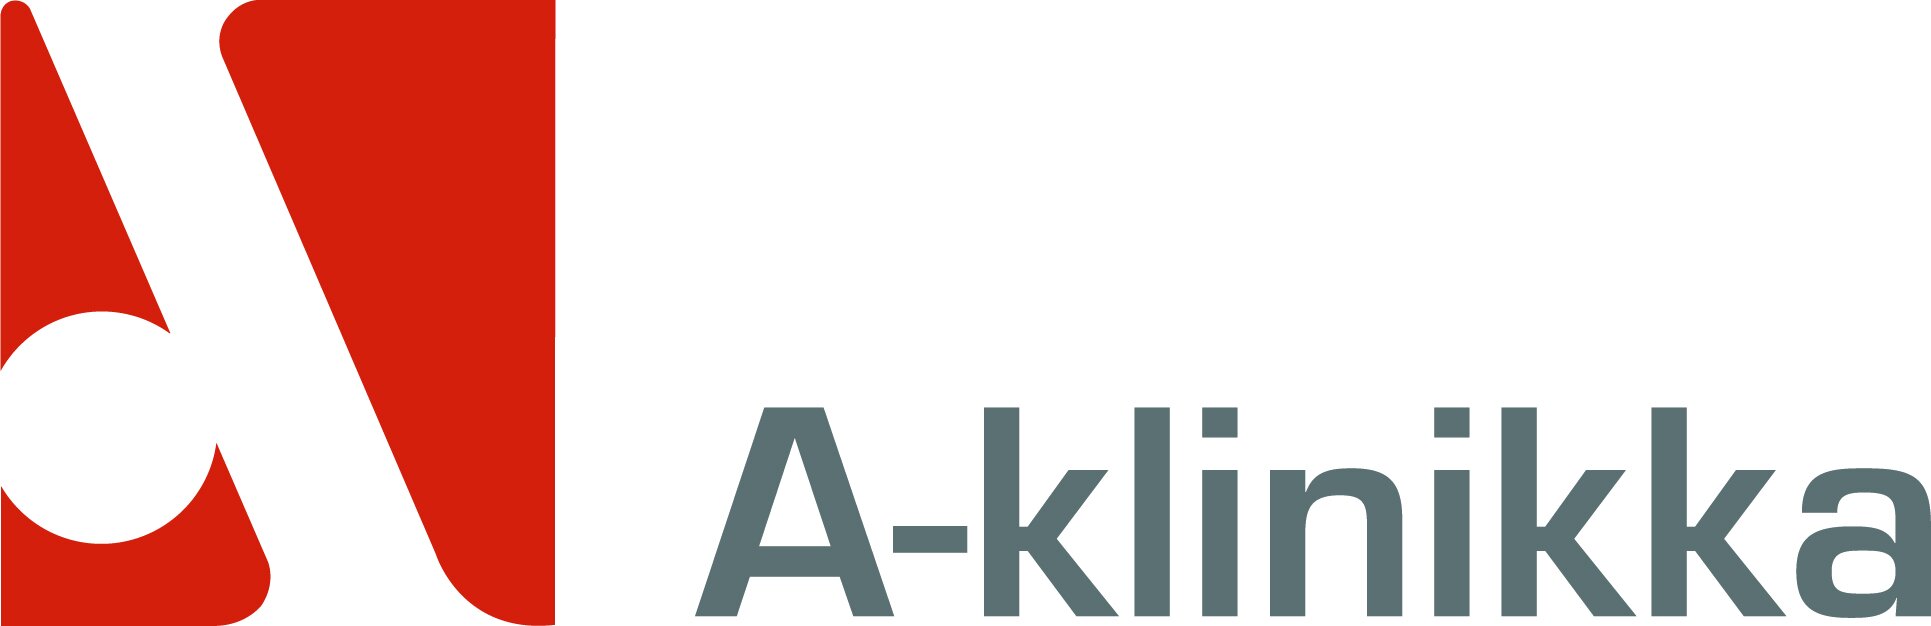 A-klinikka Oy logo print.jpg